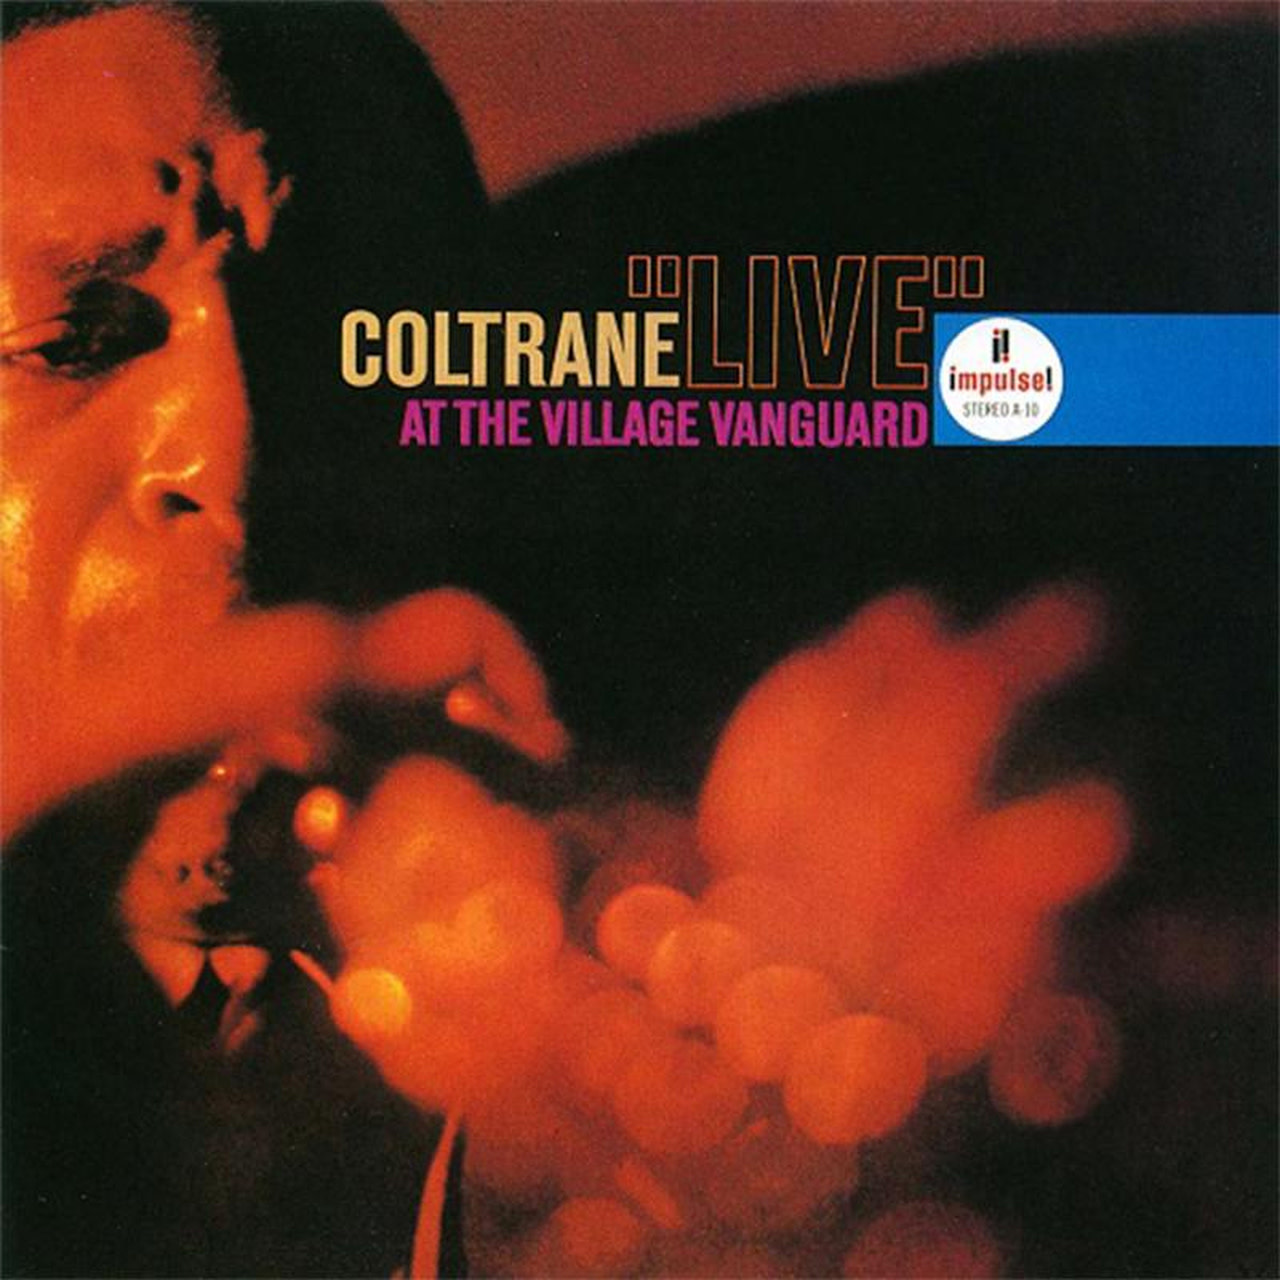 John Coltrane - Live At The Village Vanguard (Acoustic Sounds) [Vinyl]